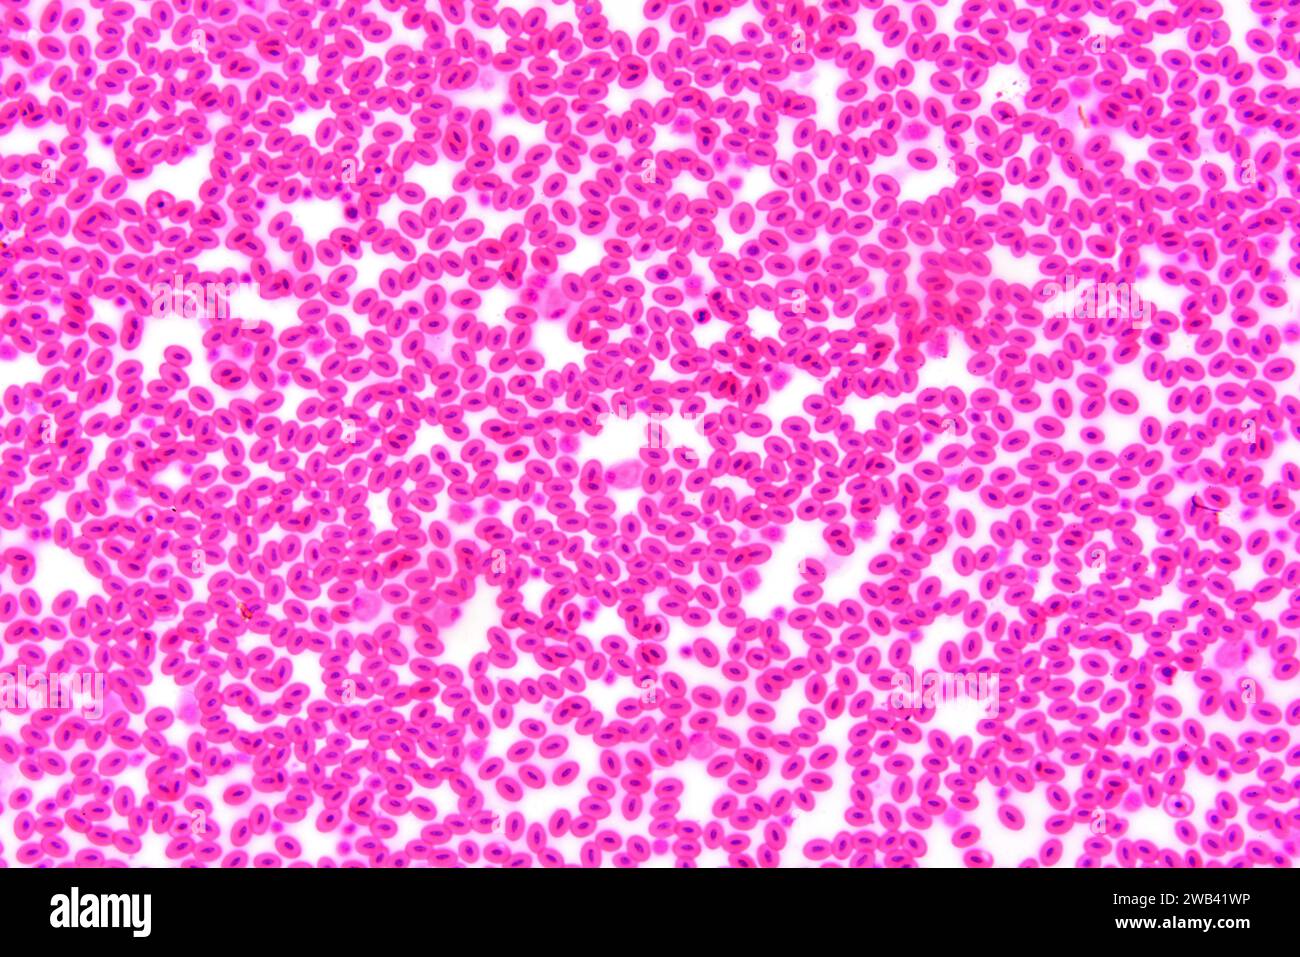 Schlangenblut. Rote Blutkörperchen mit Nukleonen. Photomikrograph X150 mit einer Breite von 10 cm. Stockfoto